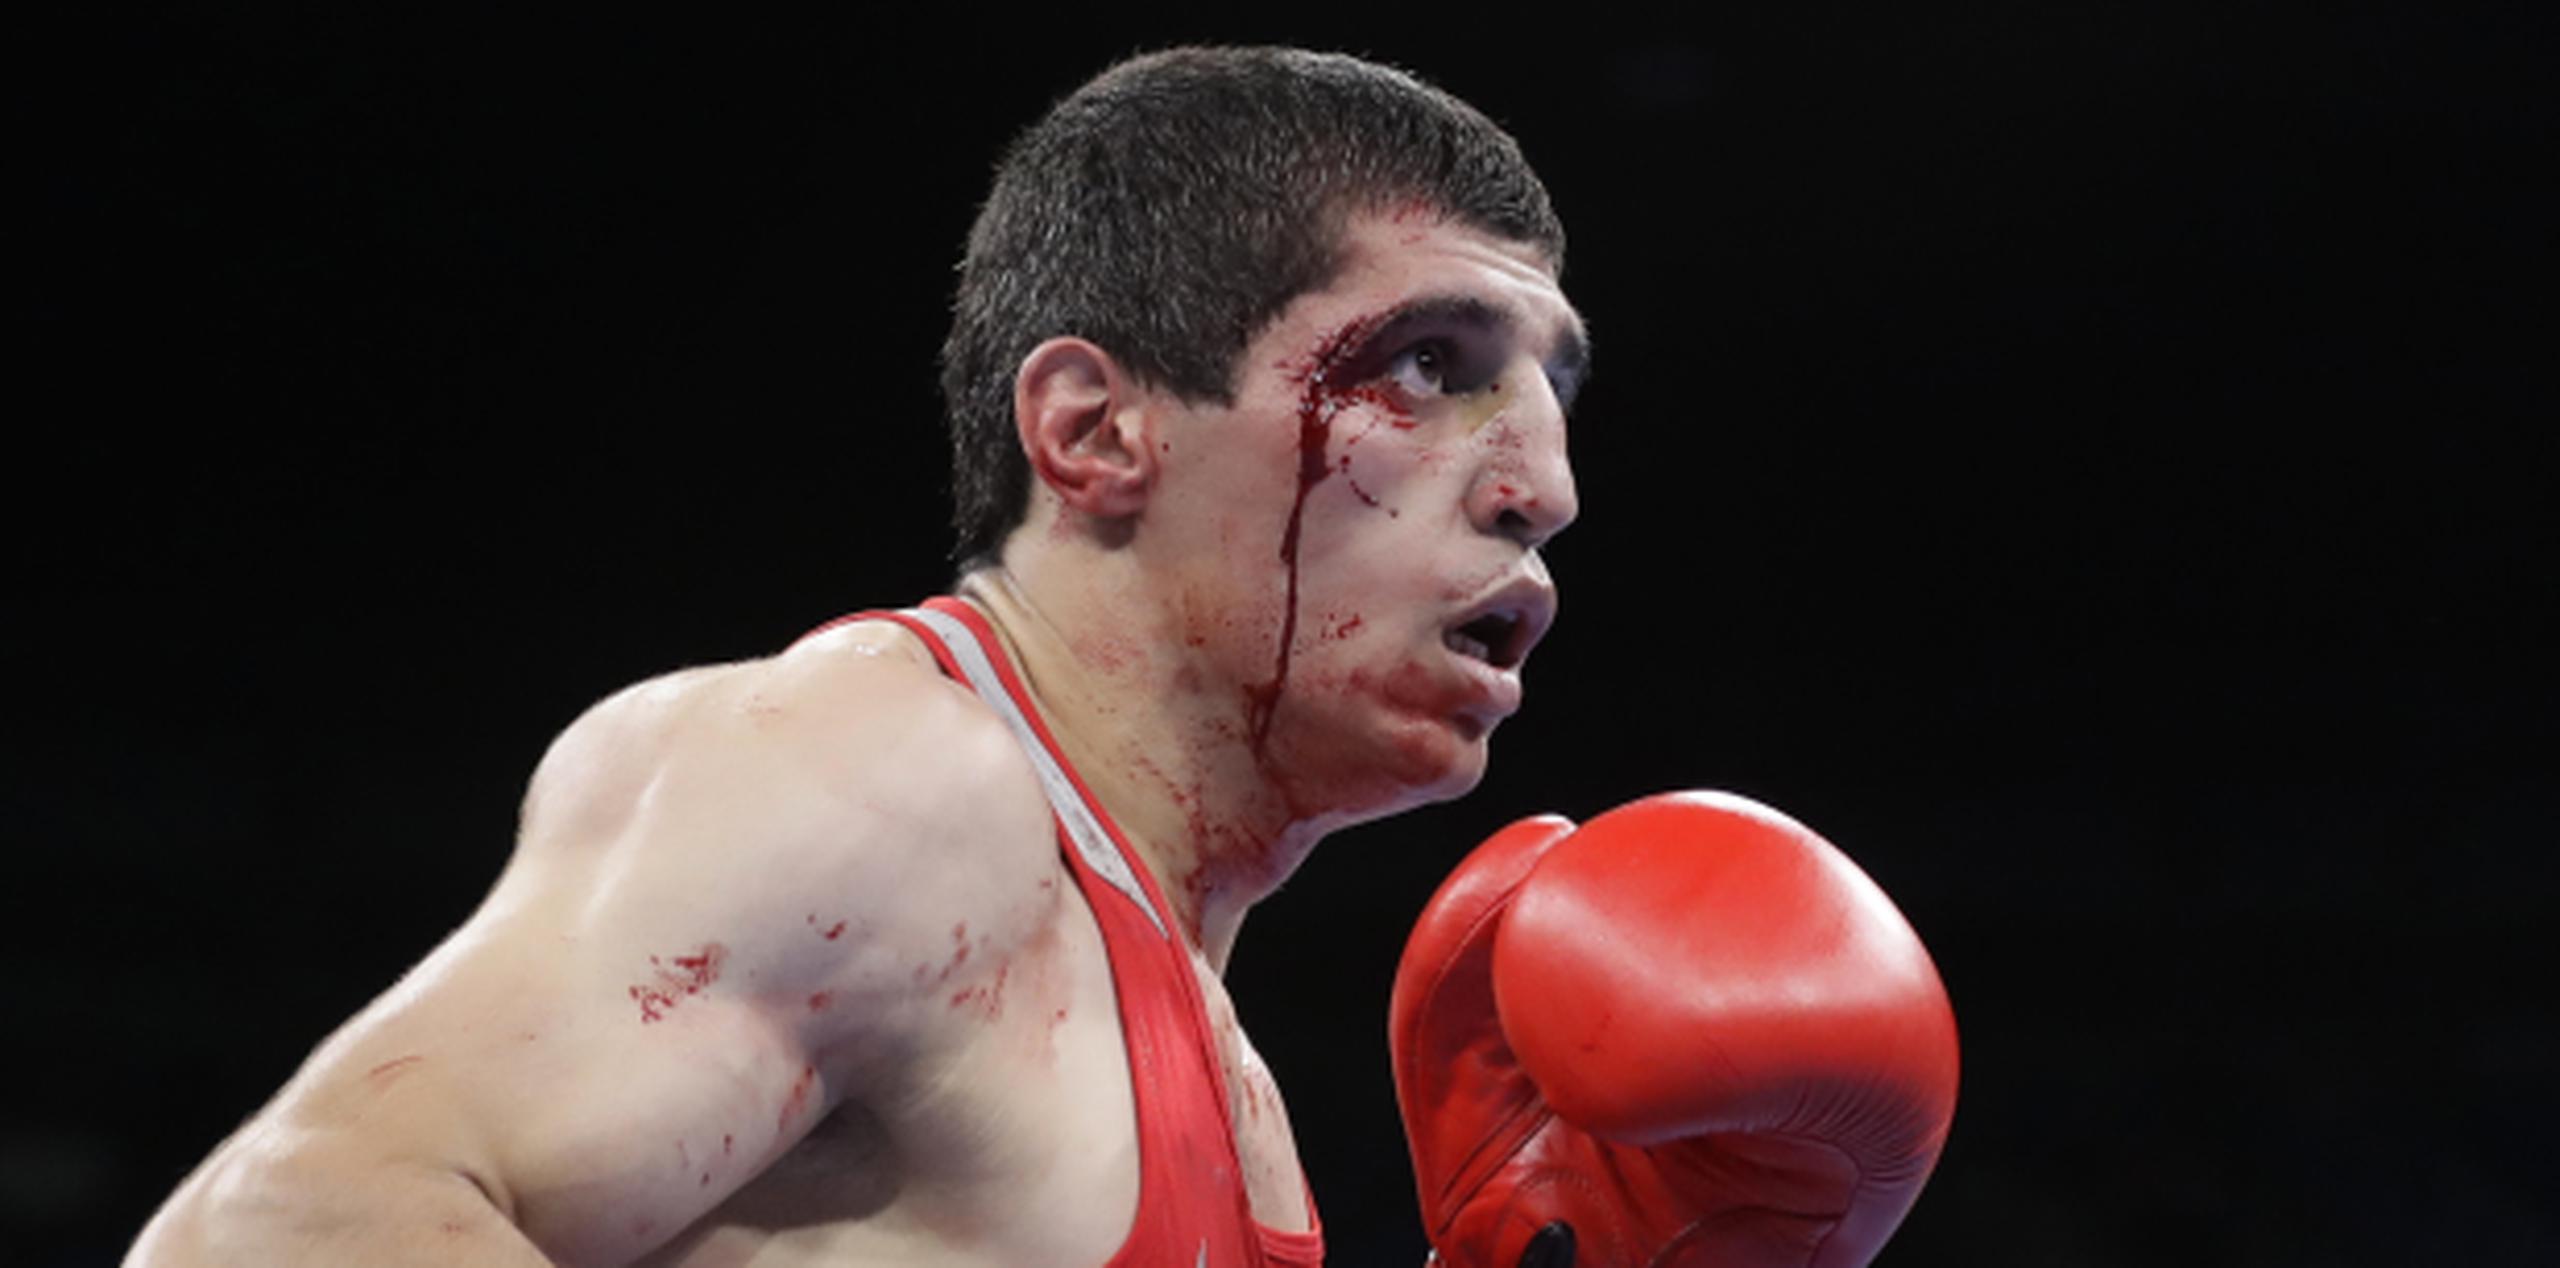 Vladimir Margaryan es uno de cerca de 12 boxeadores que ha terminado ensangrentado tras un combate en Río, y perdió su pelea cuando ante el sangrado no se permitió que continuara el combate. (AP)